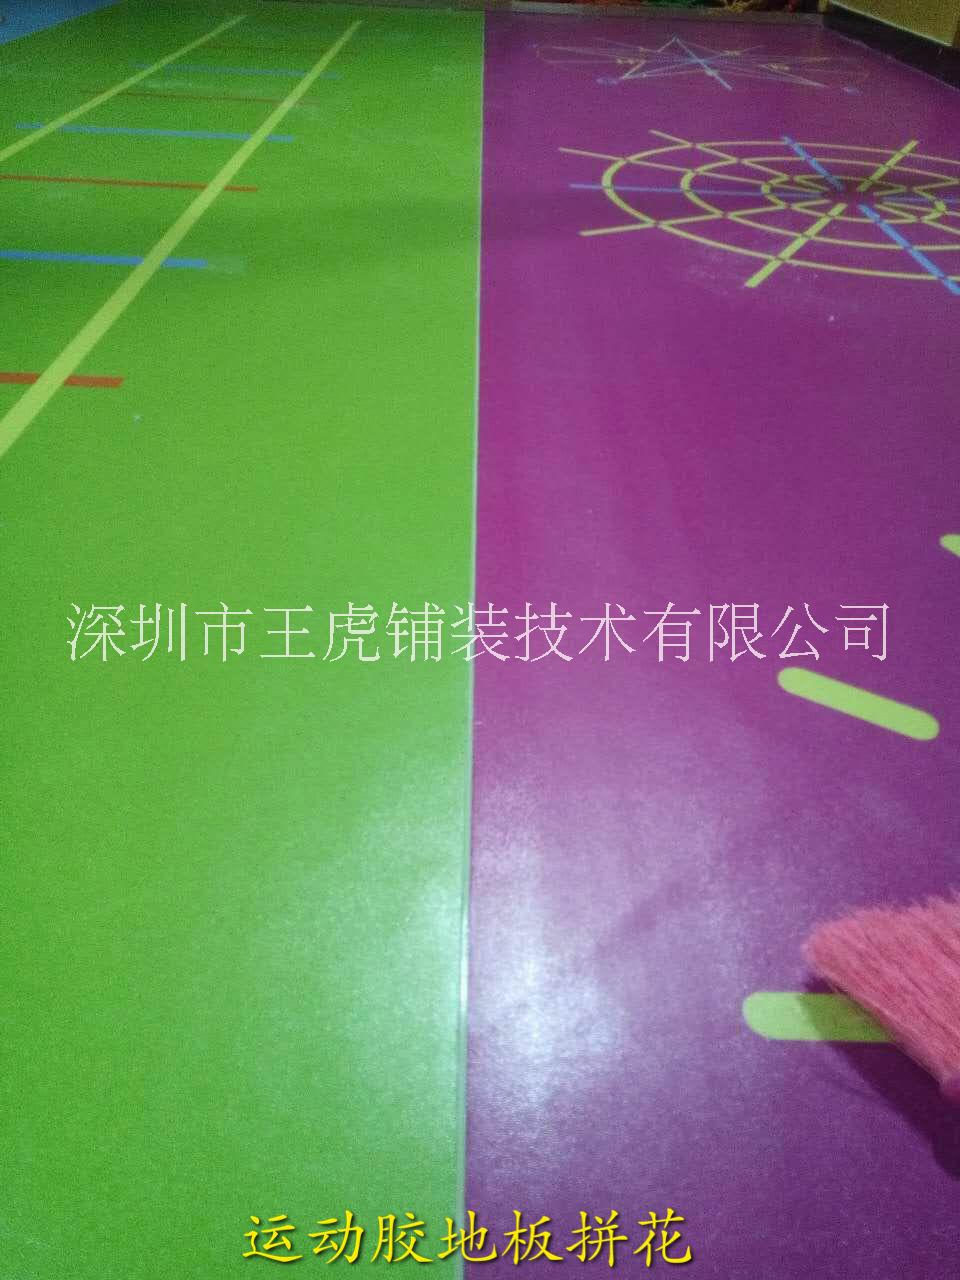 运动胶地板拼花  运动地板施工  健身房地面施工图片